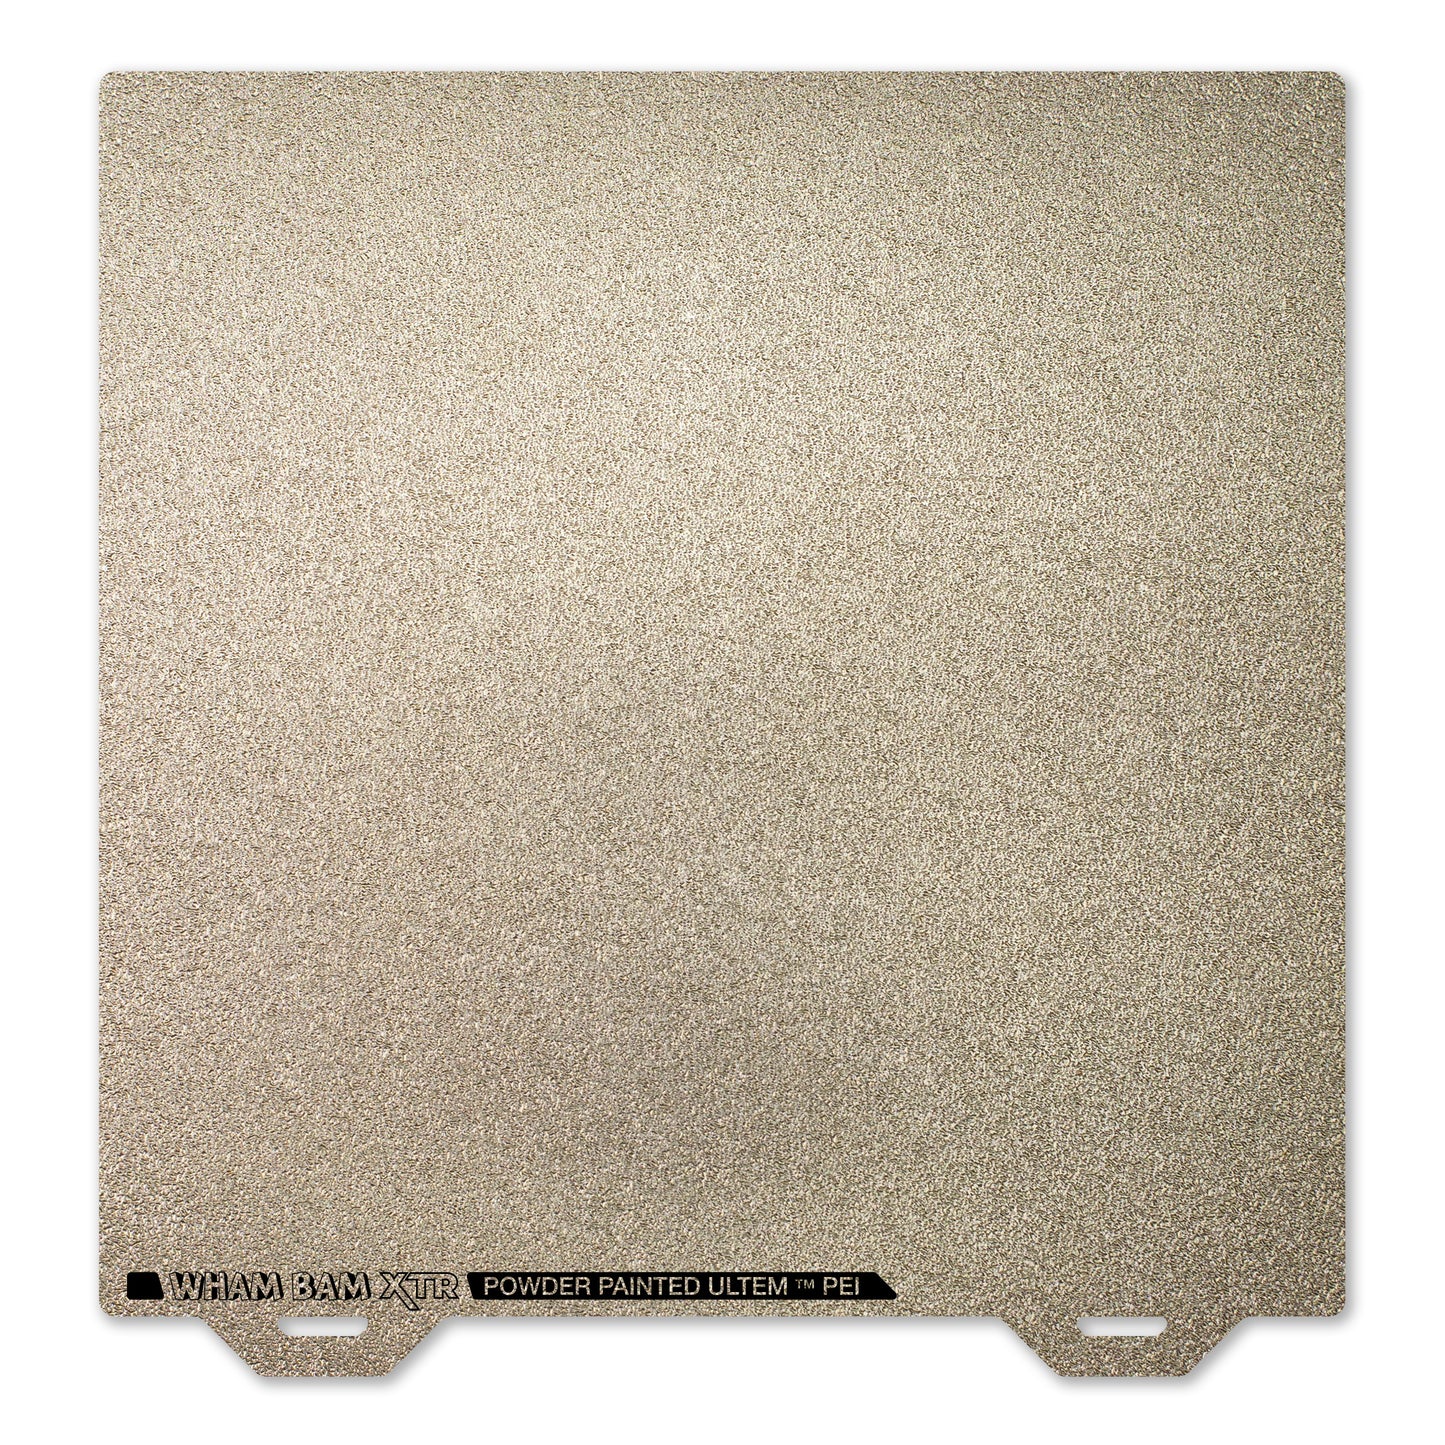 Flexi Plate with Textured ULTEM PEI - QIDI TECH X-Max 3 - 330 x 330